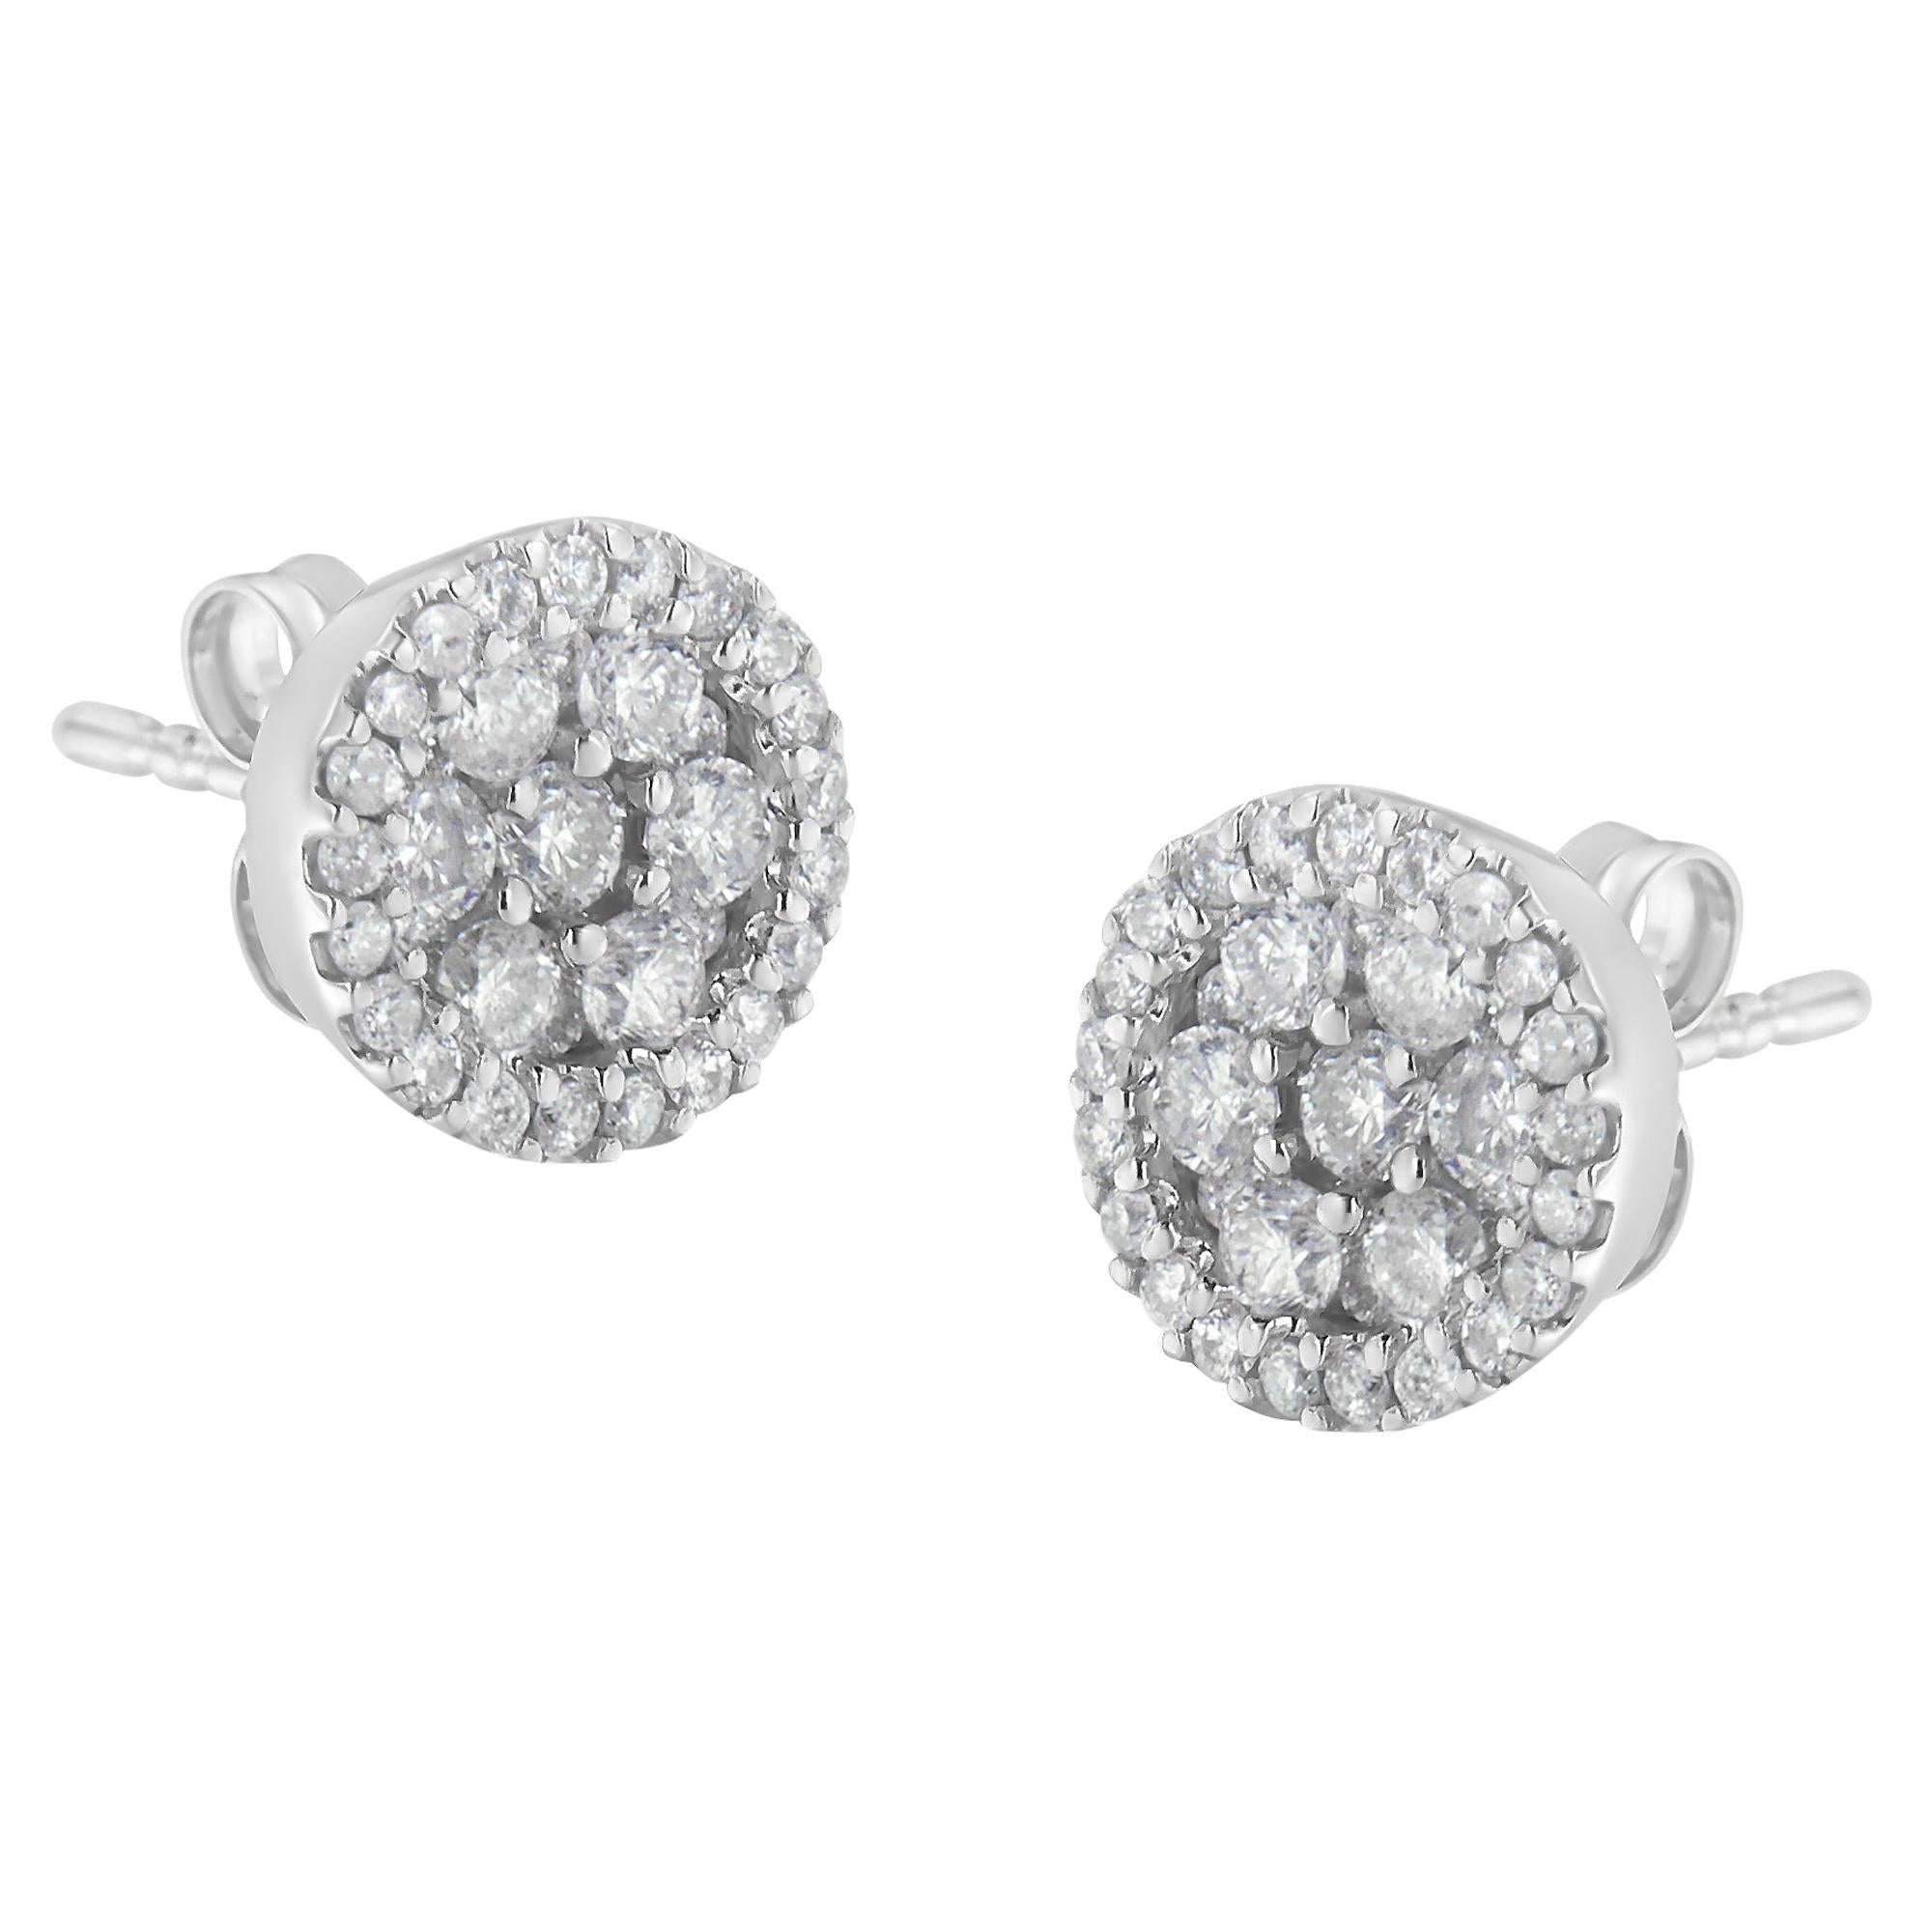 14K White Gold 1.0 Carat Diamond Stud Earrings